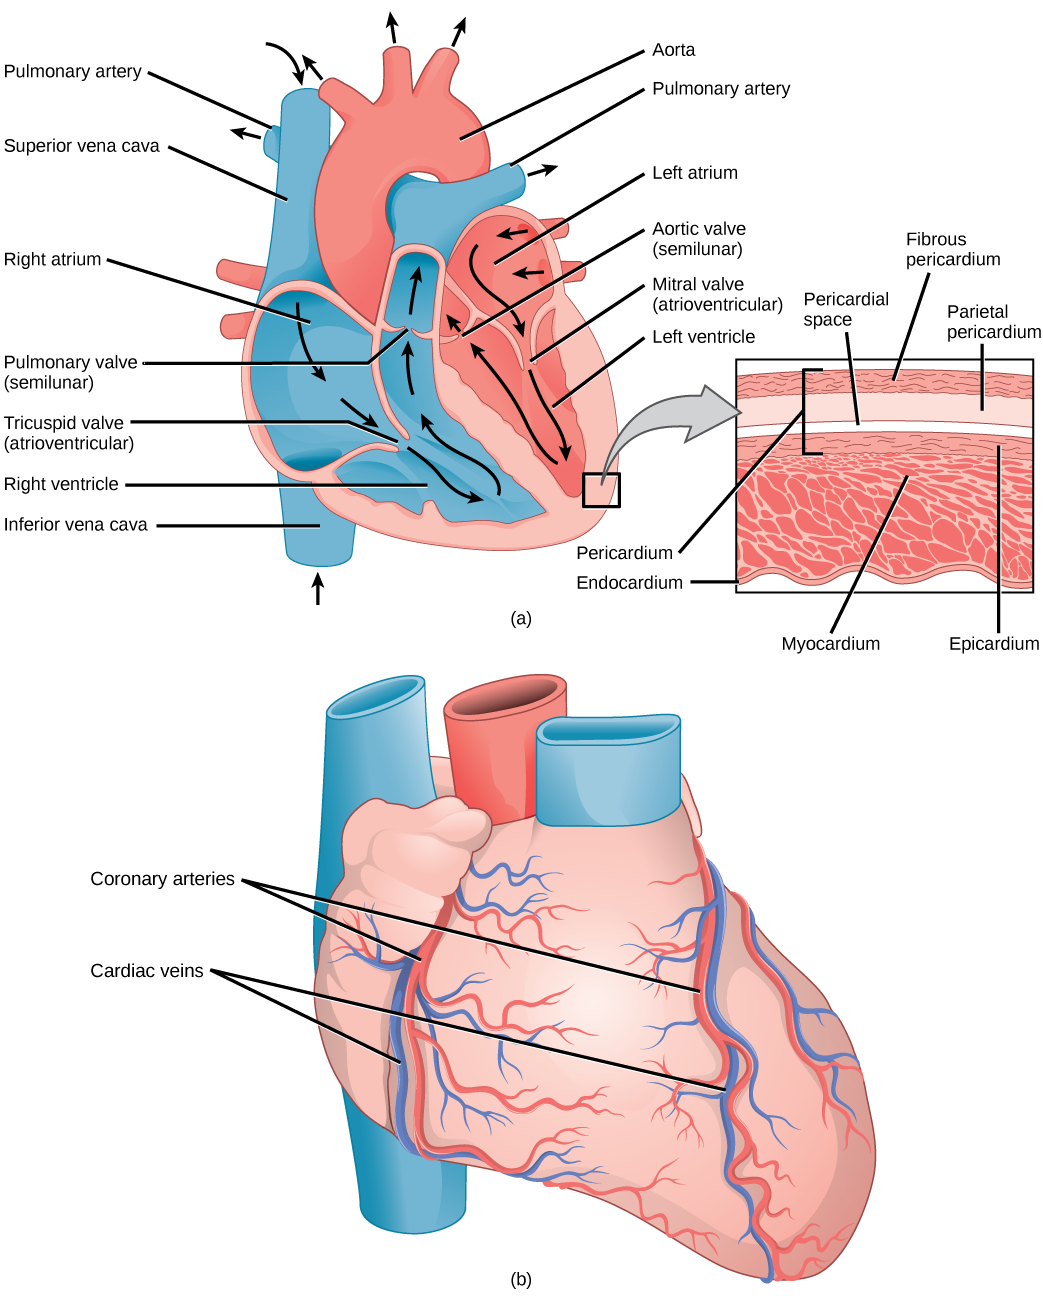 La ilustración A muestra las partes del corazón. La sangre ingresa a la aurícula derecha a través de una vena cava superior superior y una vena cava inferior inferior. Desde la aurícula derecha, la sangre fluye a través de la válvula tricúspide en forma de embudo hacia el ventrículo derecho. Luego, la sangre viaja hacia arriba y a través de la válvula pulmonar hacia la arteria pulmonar. La sangre vuelve a ingresar al corazón a través de las venas pulmonares, y viaja hacia abajo desde la aurícula izquierda, a través de la válvula mitral, hacia el ventrículo derecho. La sangre luego viaja hacia arriba a través de la válvula aórtica, hacia la aorta. Las válvulas tricúspide y mitral son auriculoventriculares y en forma de embudo. Las válvulas pulmonar y aórtica son semilunares y ligeramente curvadas. Un recuadro muestra una sección transversal del corazón. El miocardio es la capa muscular gruesa. El interior del corazón está protegido por el endocardio, y el exterior está protegido por el pericardio. La ilustración B muestra el exterior del corazón. Las arterias coronarias y las venas coronarias corren de arriba hacia abajo a lo largo de los lados derecho e izquierdo.